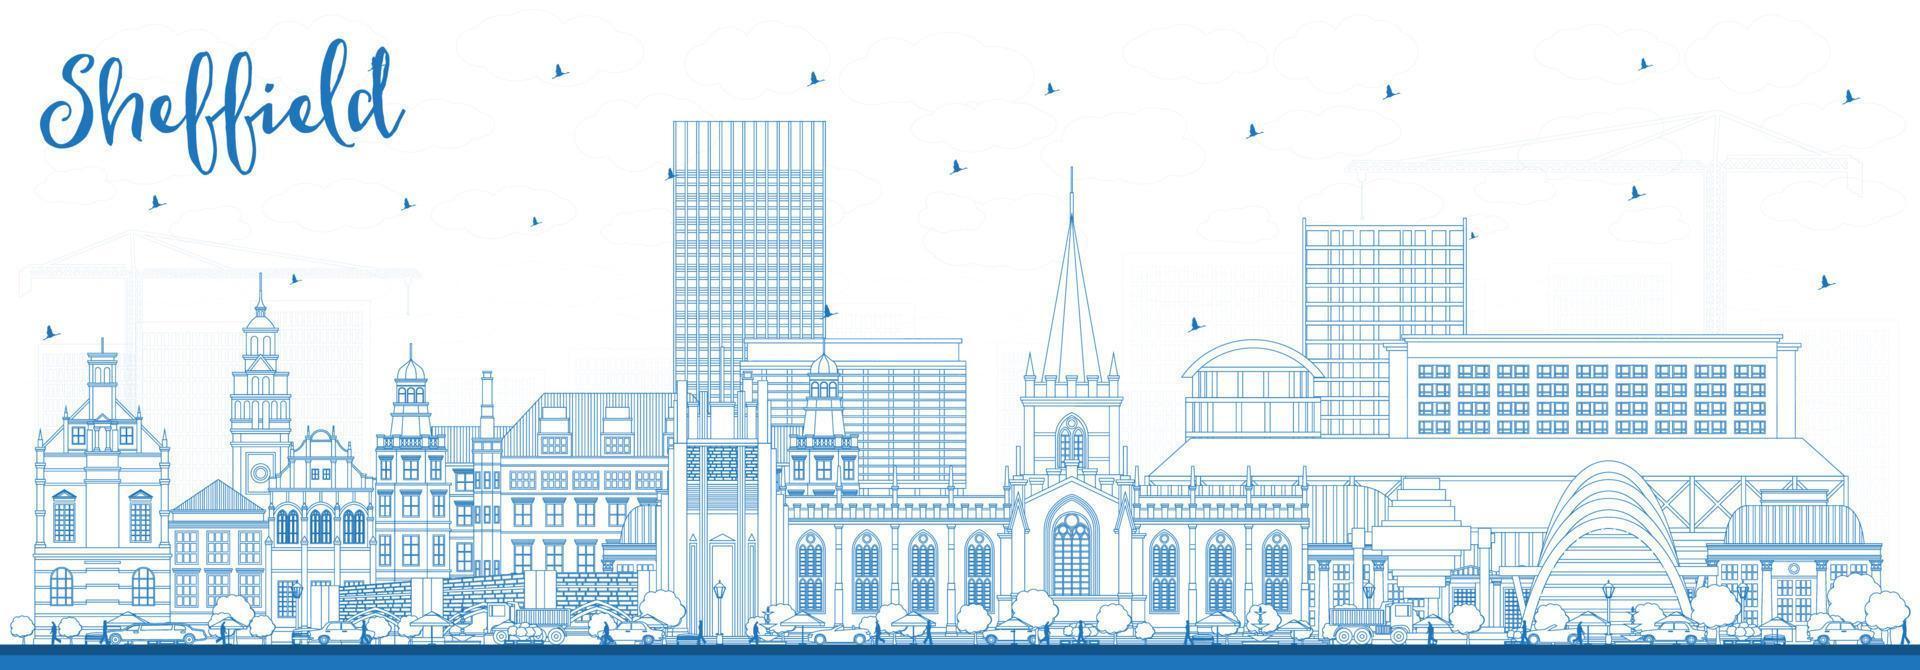 delinear el horizonte de la ciudad de Sheffield, Reino Unido, con edificios azules. vector